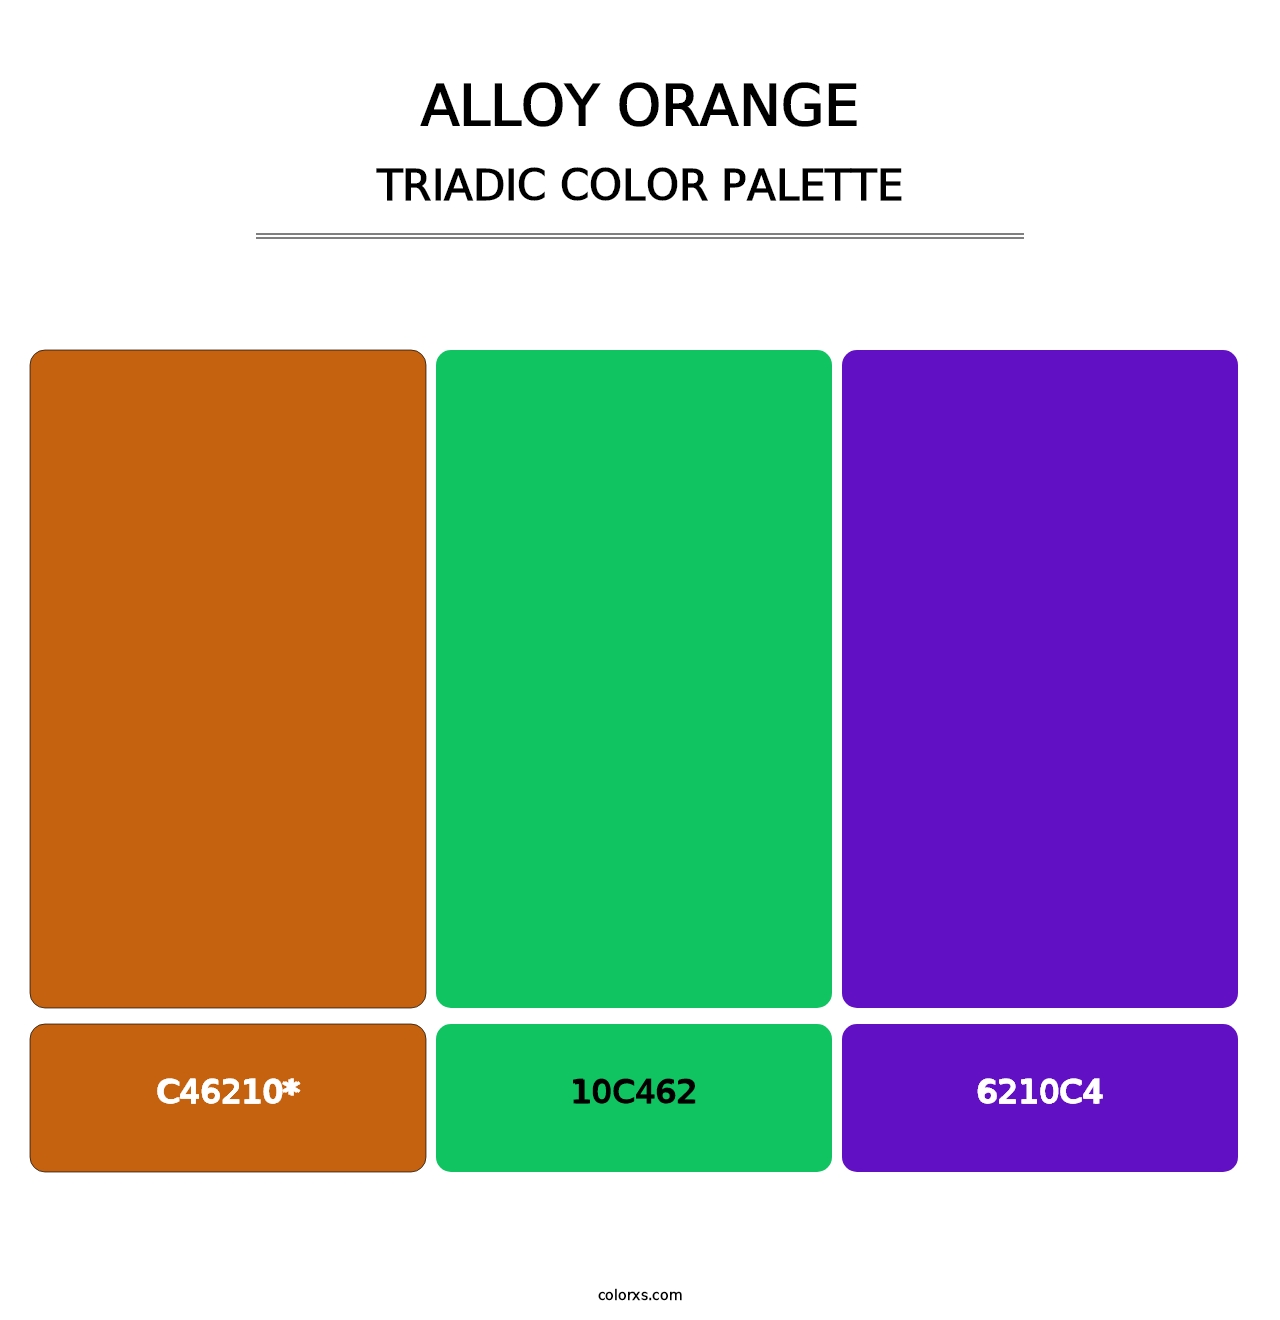 Alloy Orange - Triadic Color Palette